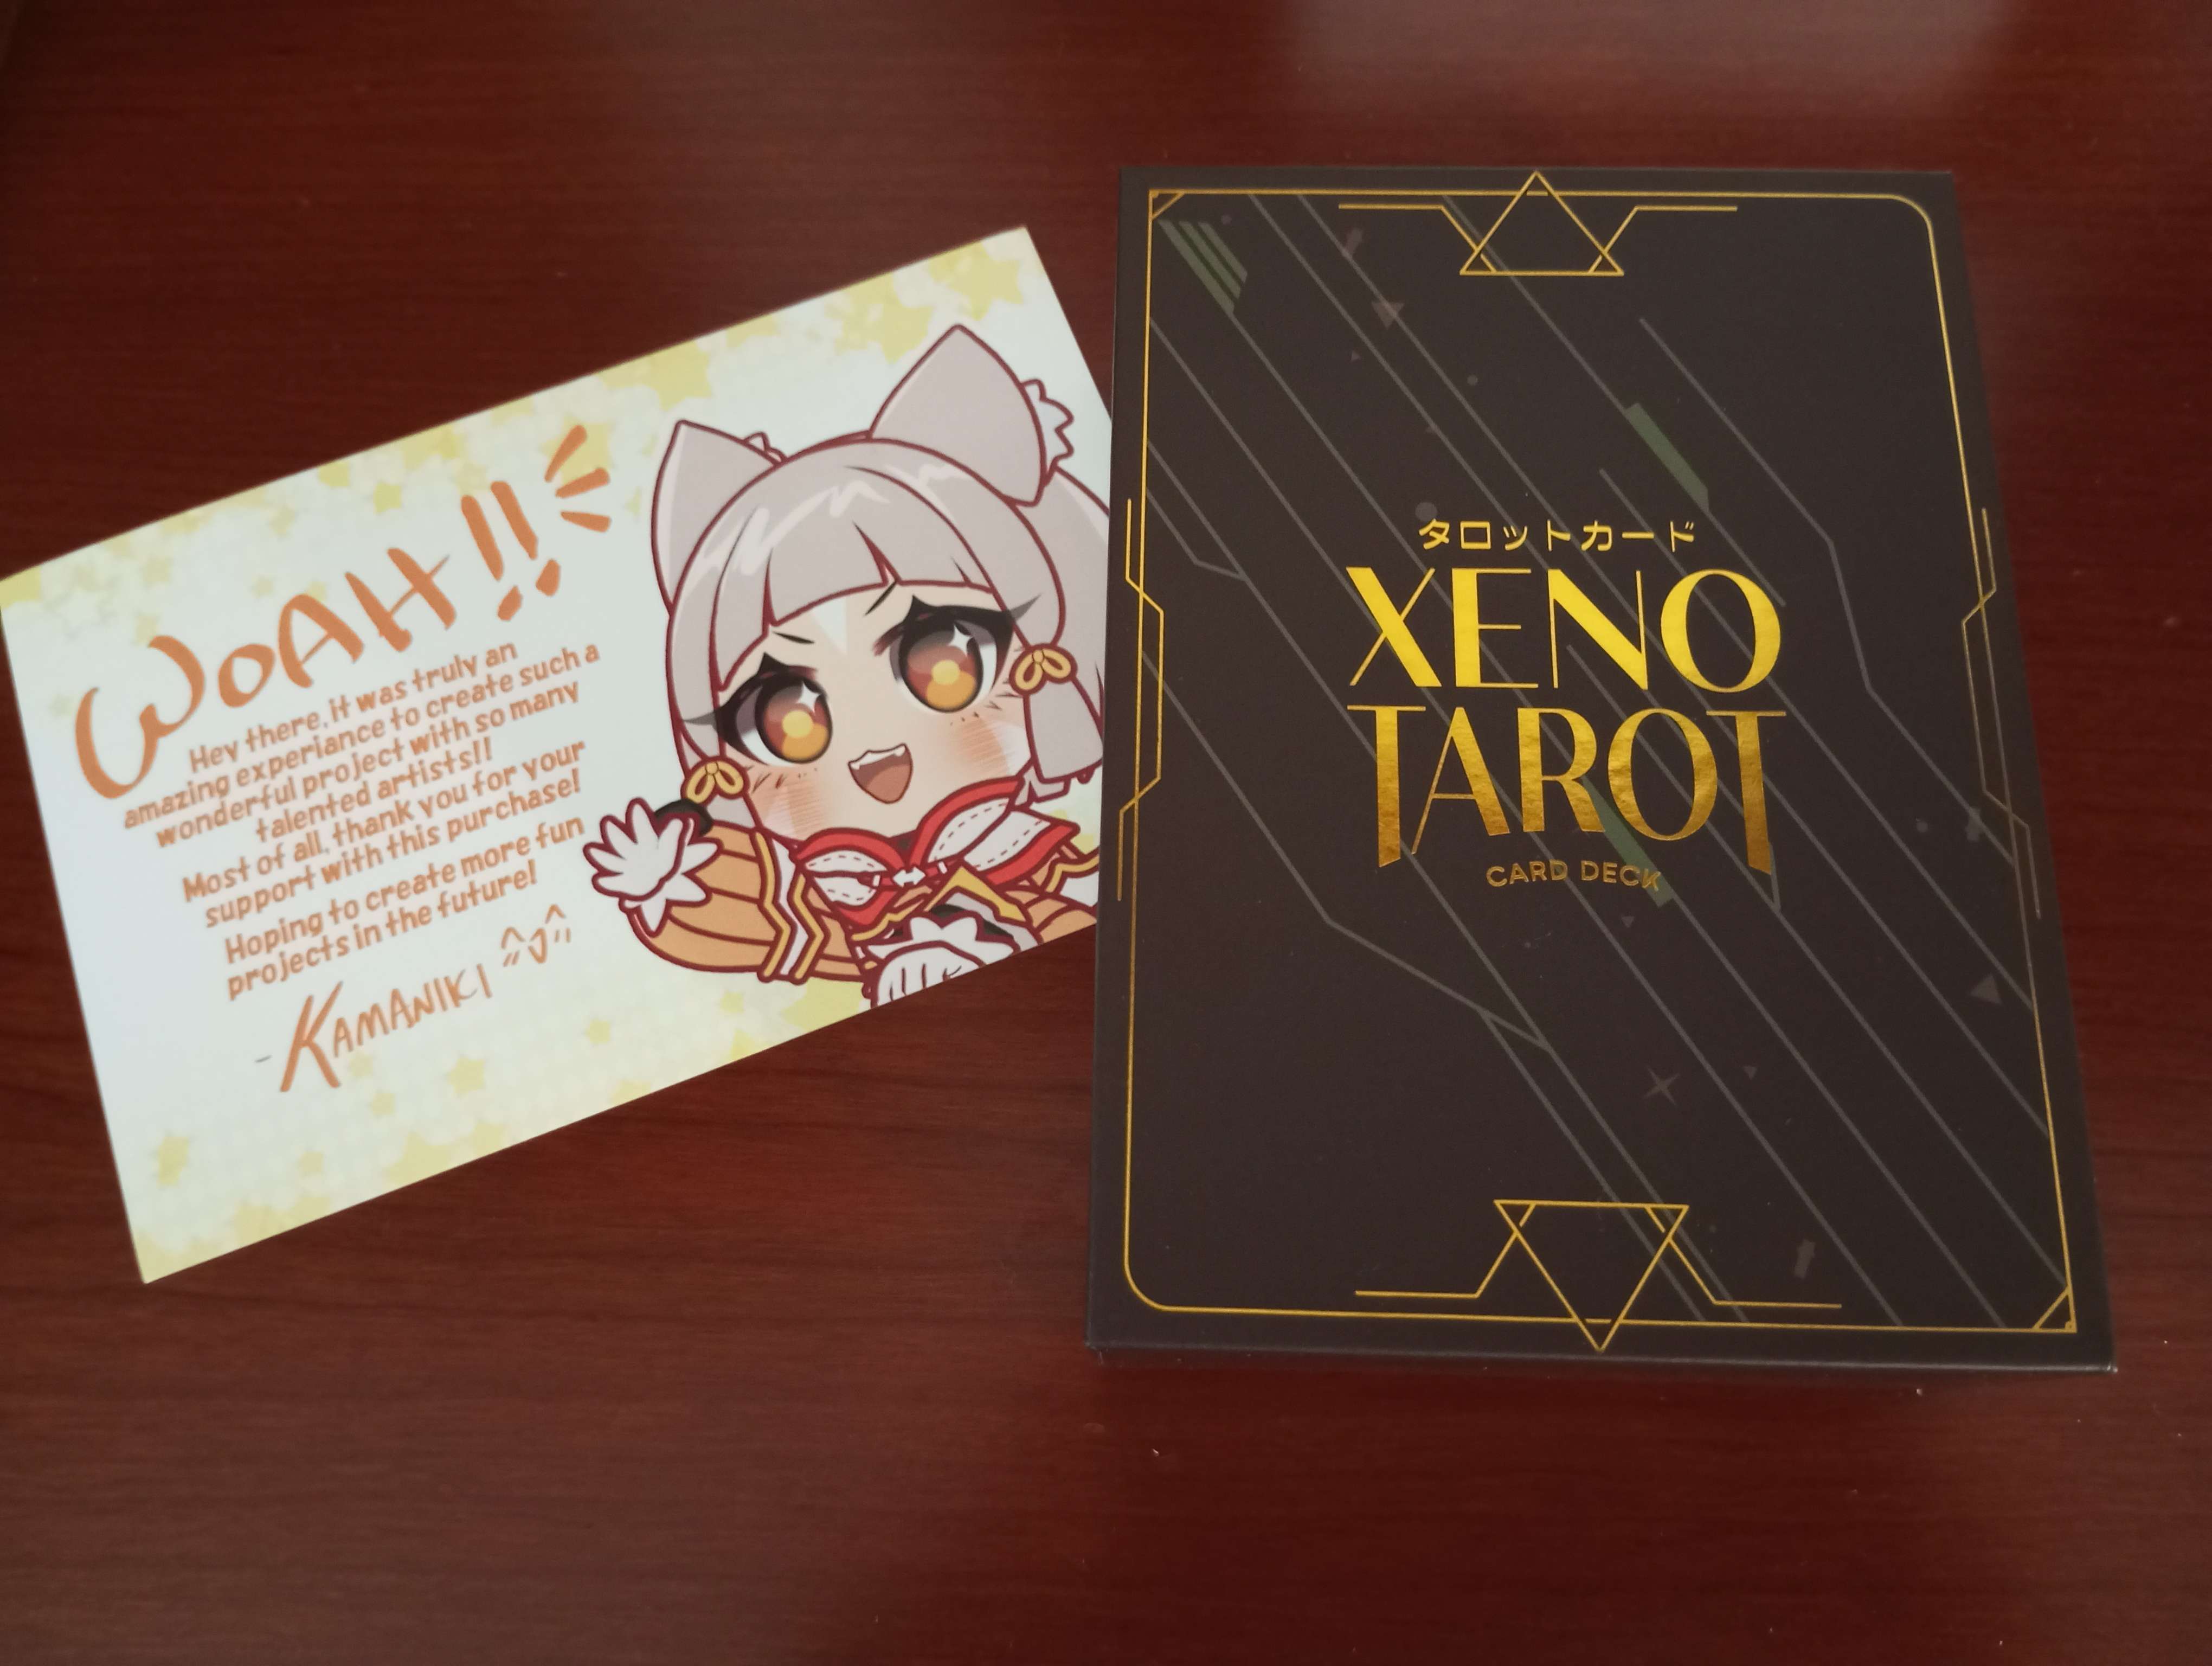 My contribution to the Xeno Tarot project! My - ♡ Alina ♡